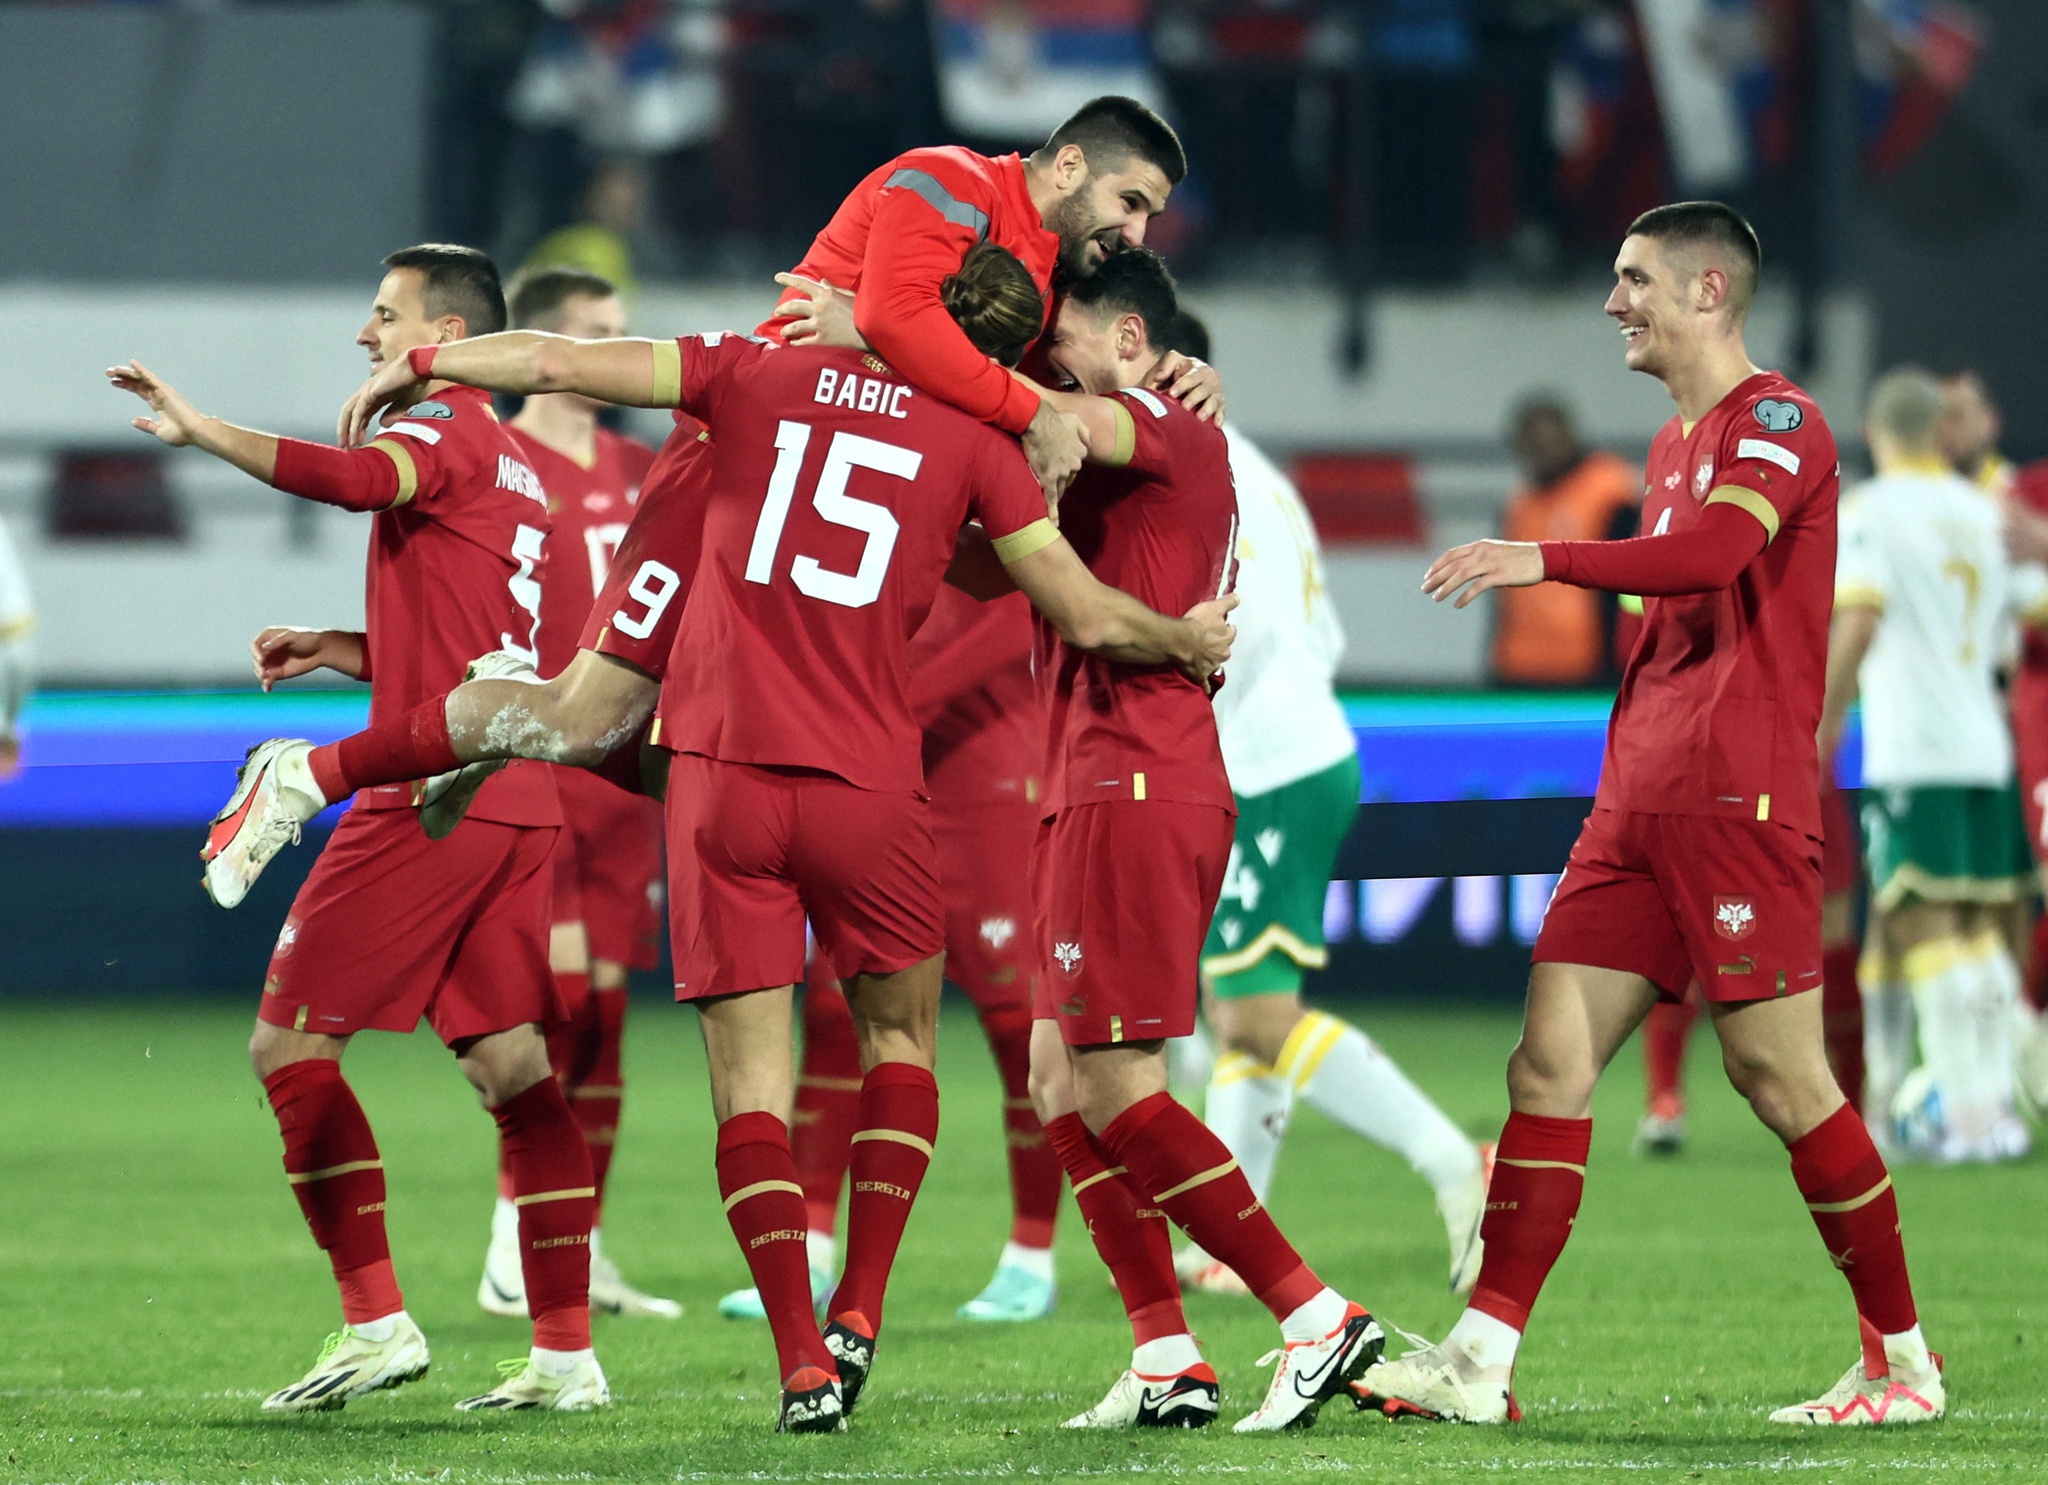 Portugal bate Polónia e fica a um empate do apuramento para a fase